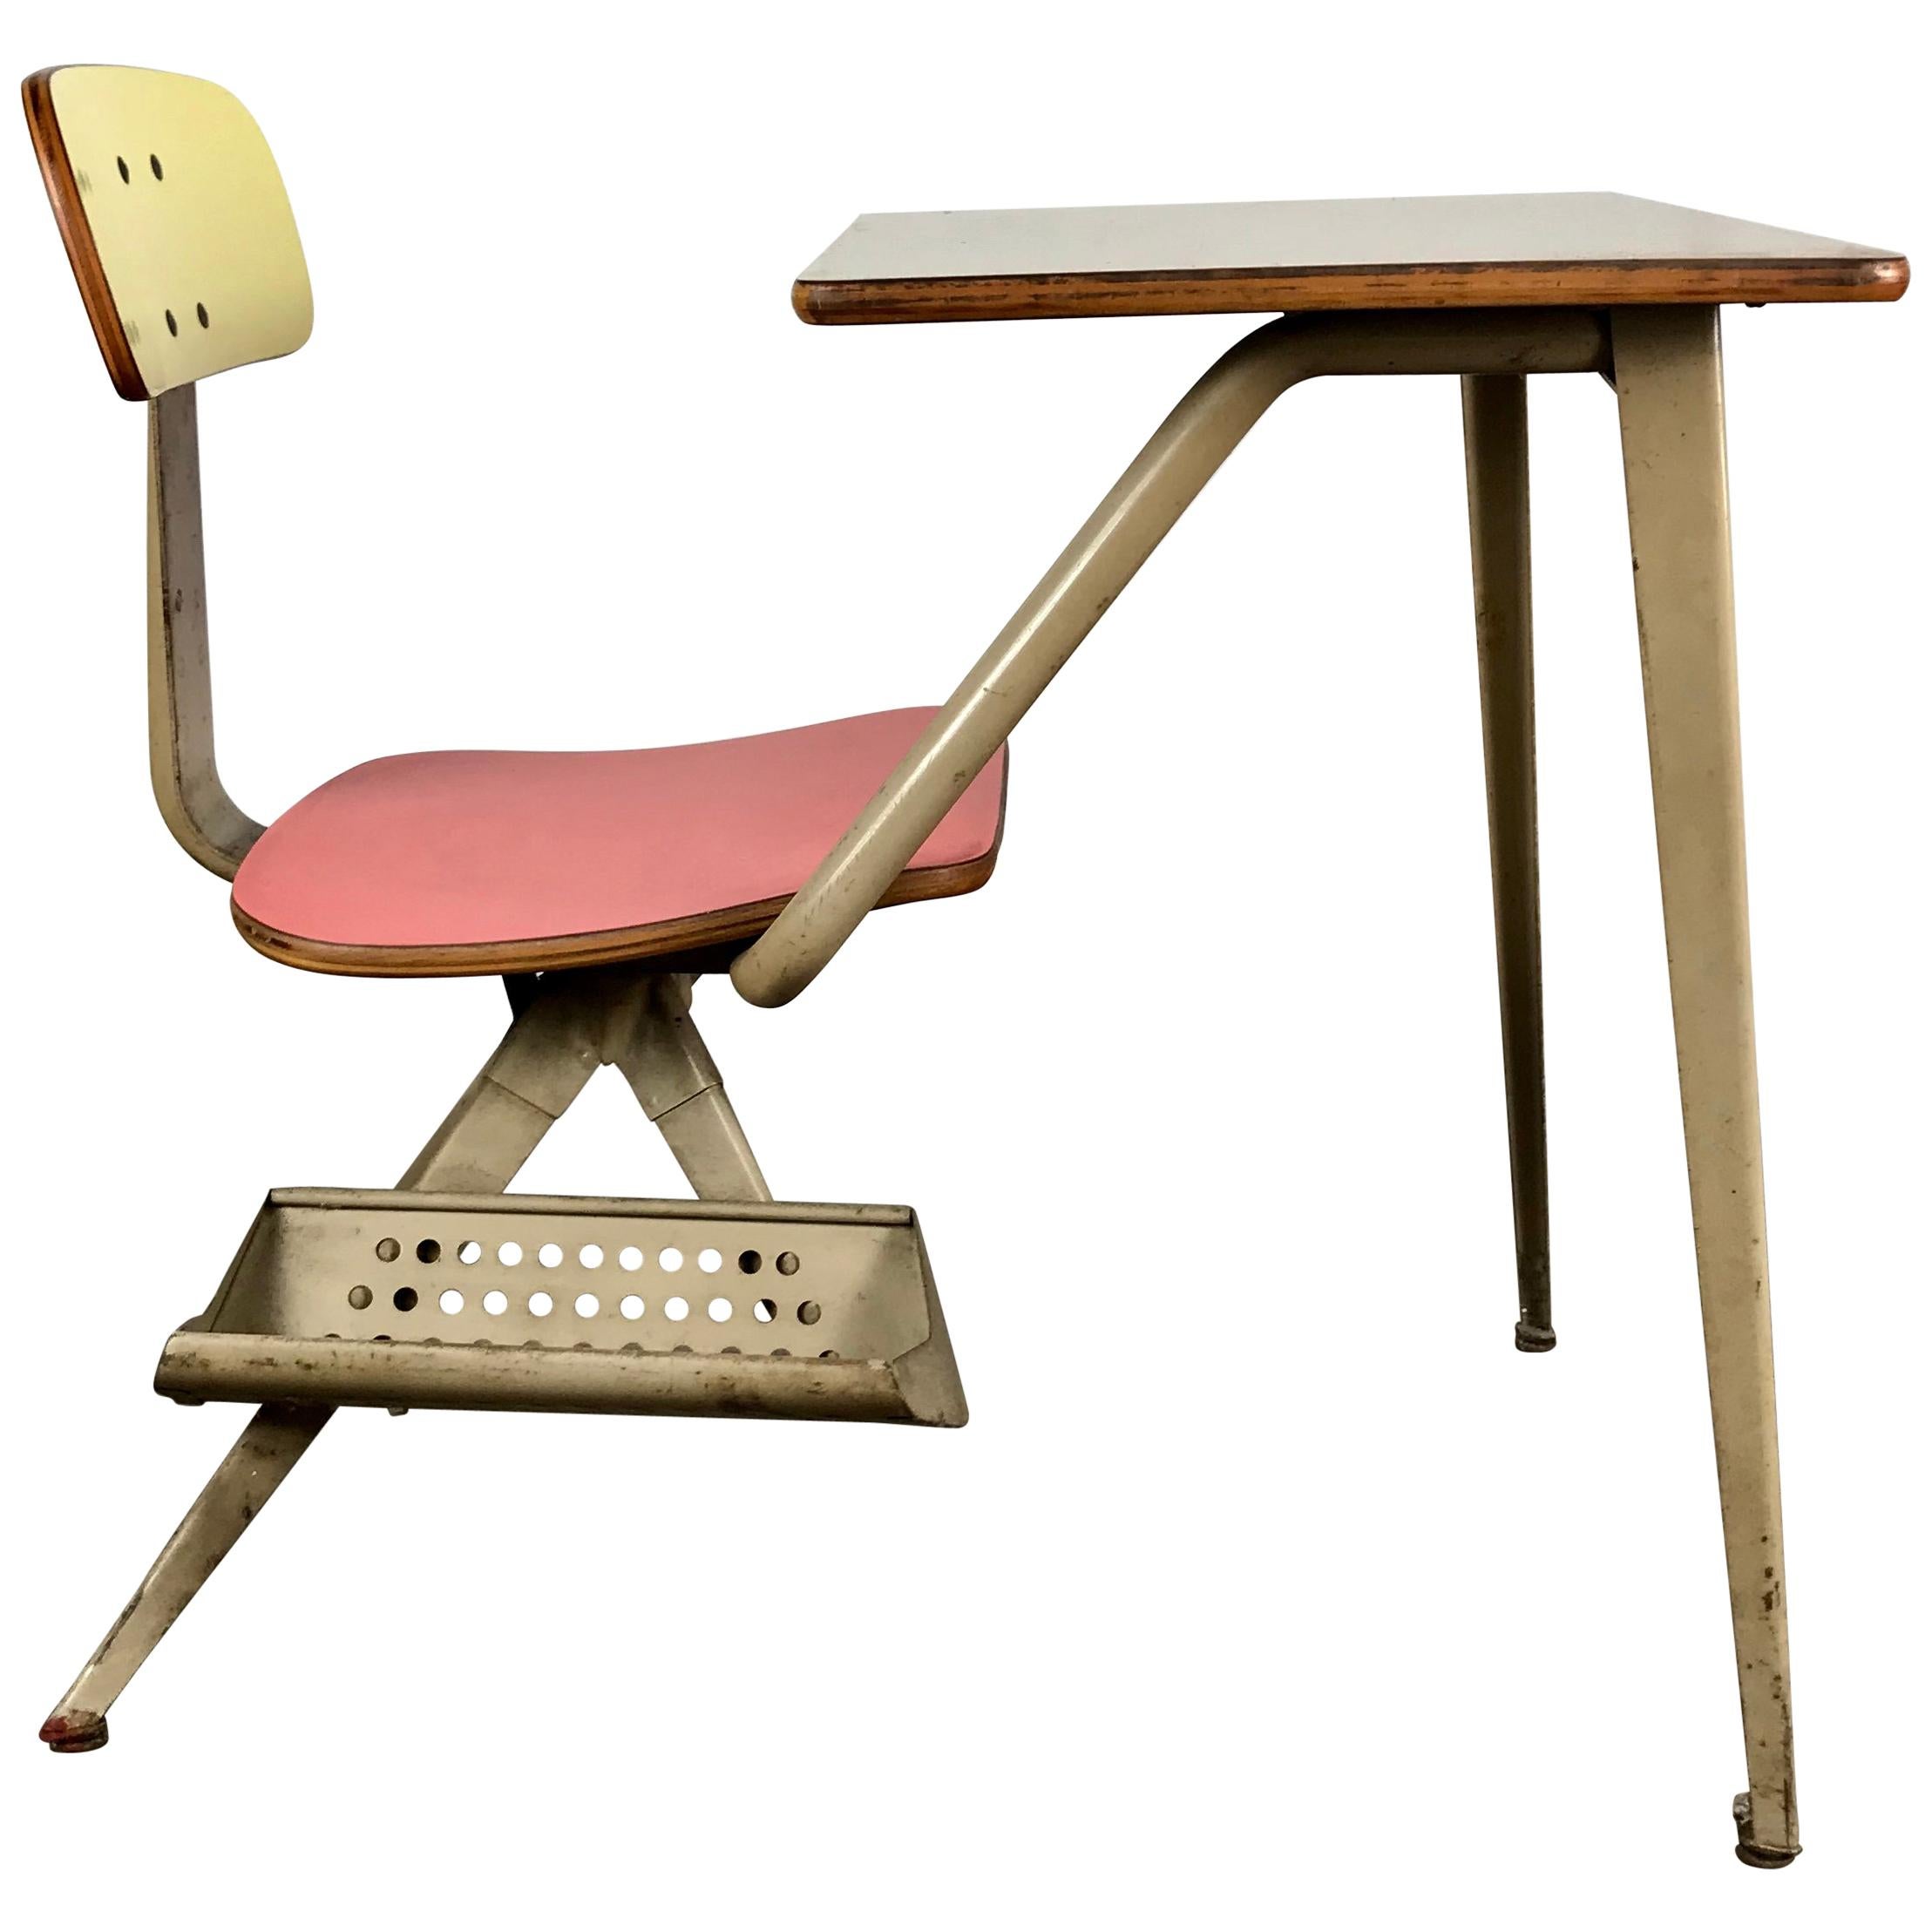 Unusual Modernist Childs Desk Attributed to Friso Kramer